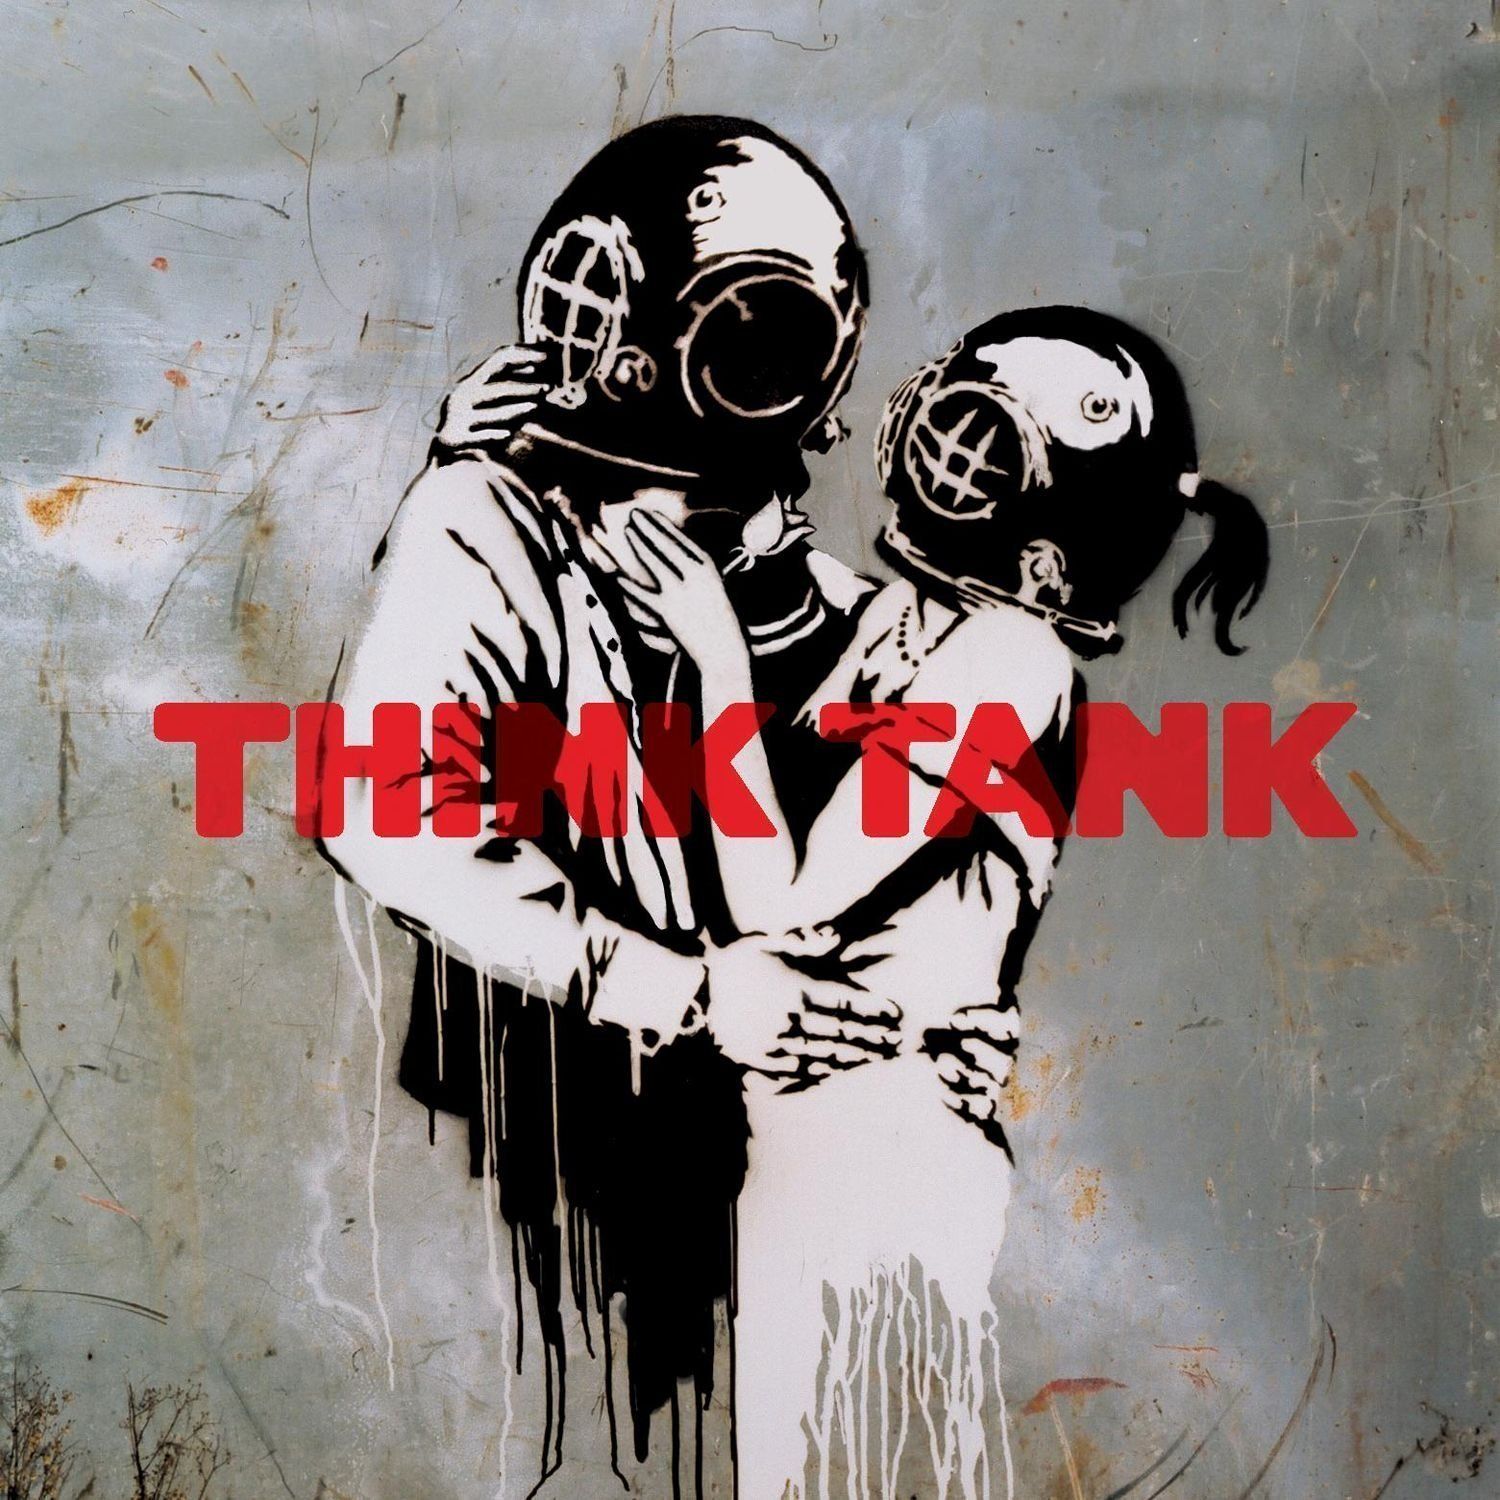 BANKSY Banksy (nach)

THINK TANK, 2003

Beidseitiger Druck einer Vinylhülle.

Do&hellip;